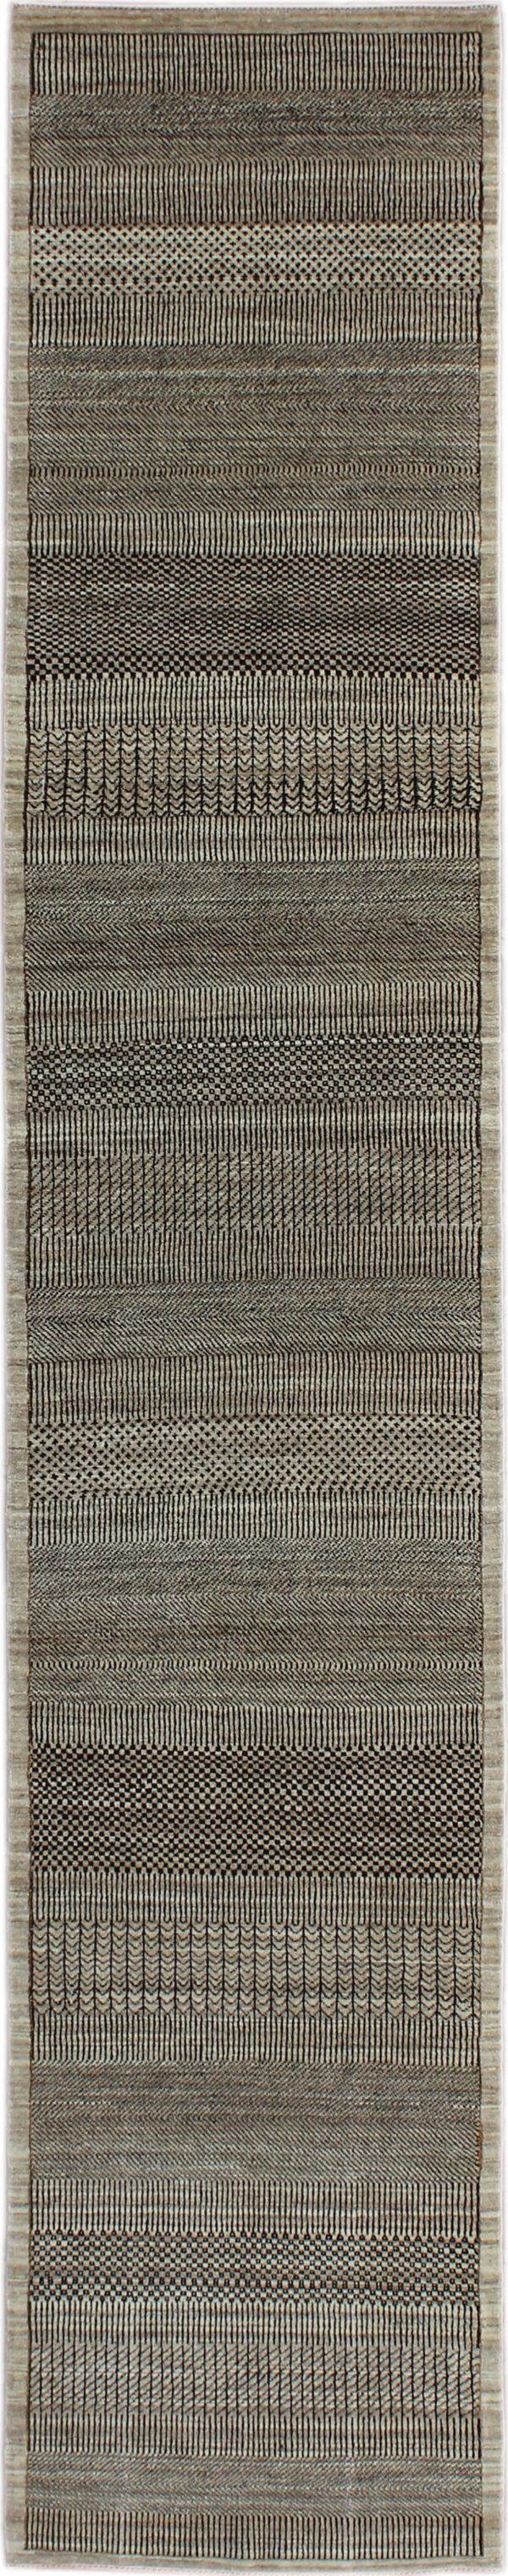 Gray on Black Runner Carpet 2'6" x 14'